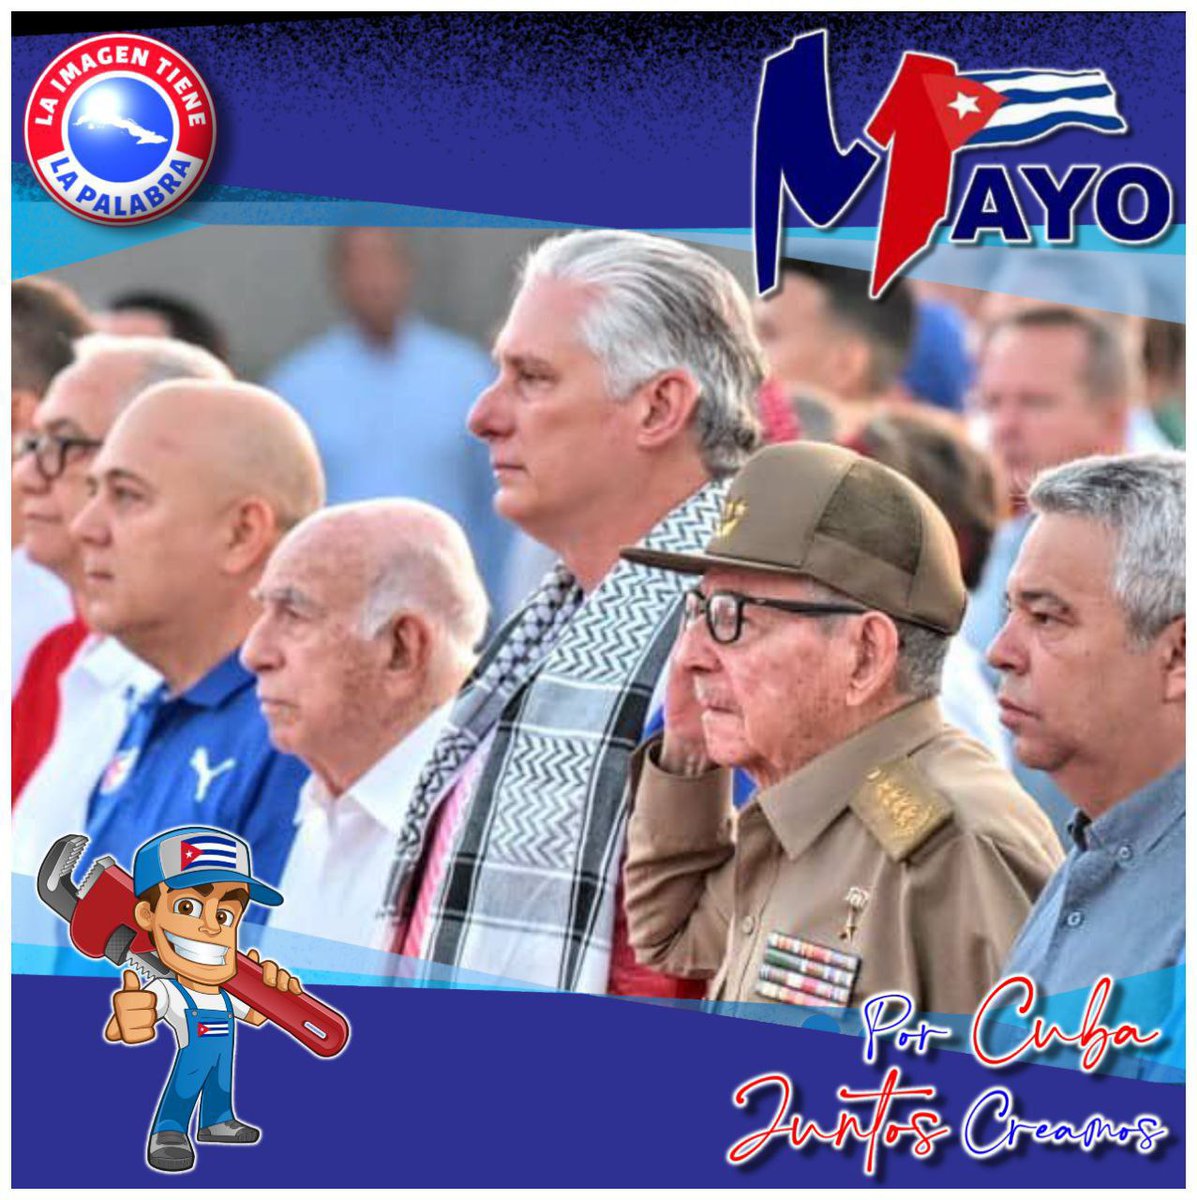 🇨🇺 Toda Cuba vuelve a celebrar el Primero de Mayo. Miles de trabajadores en todo el país conmemorarán esta fecha tan significativa para el proletariado mundial. Desde el malecón habanero los trabajadores dicen presente. #PorCubaJuntoCreamos